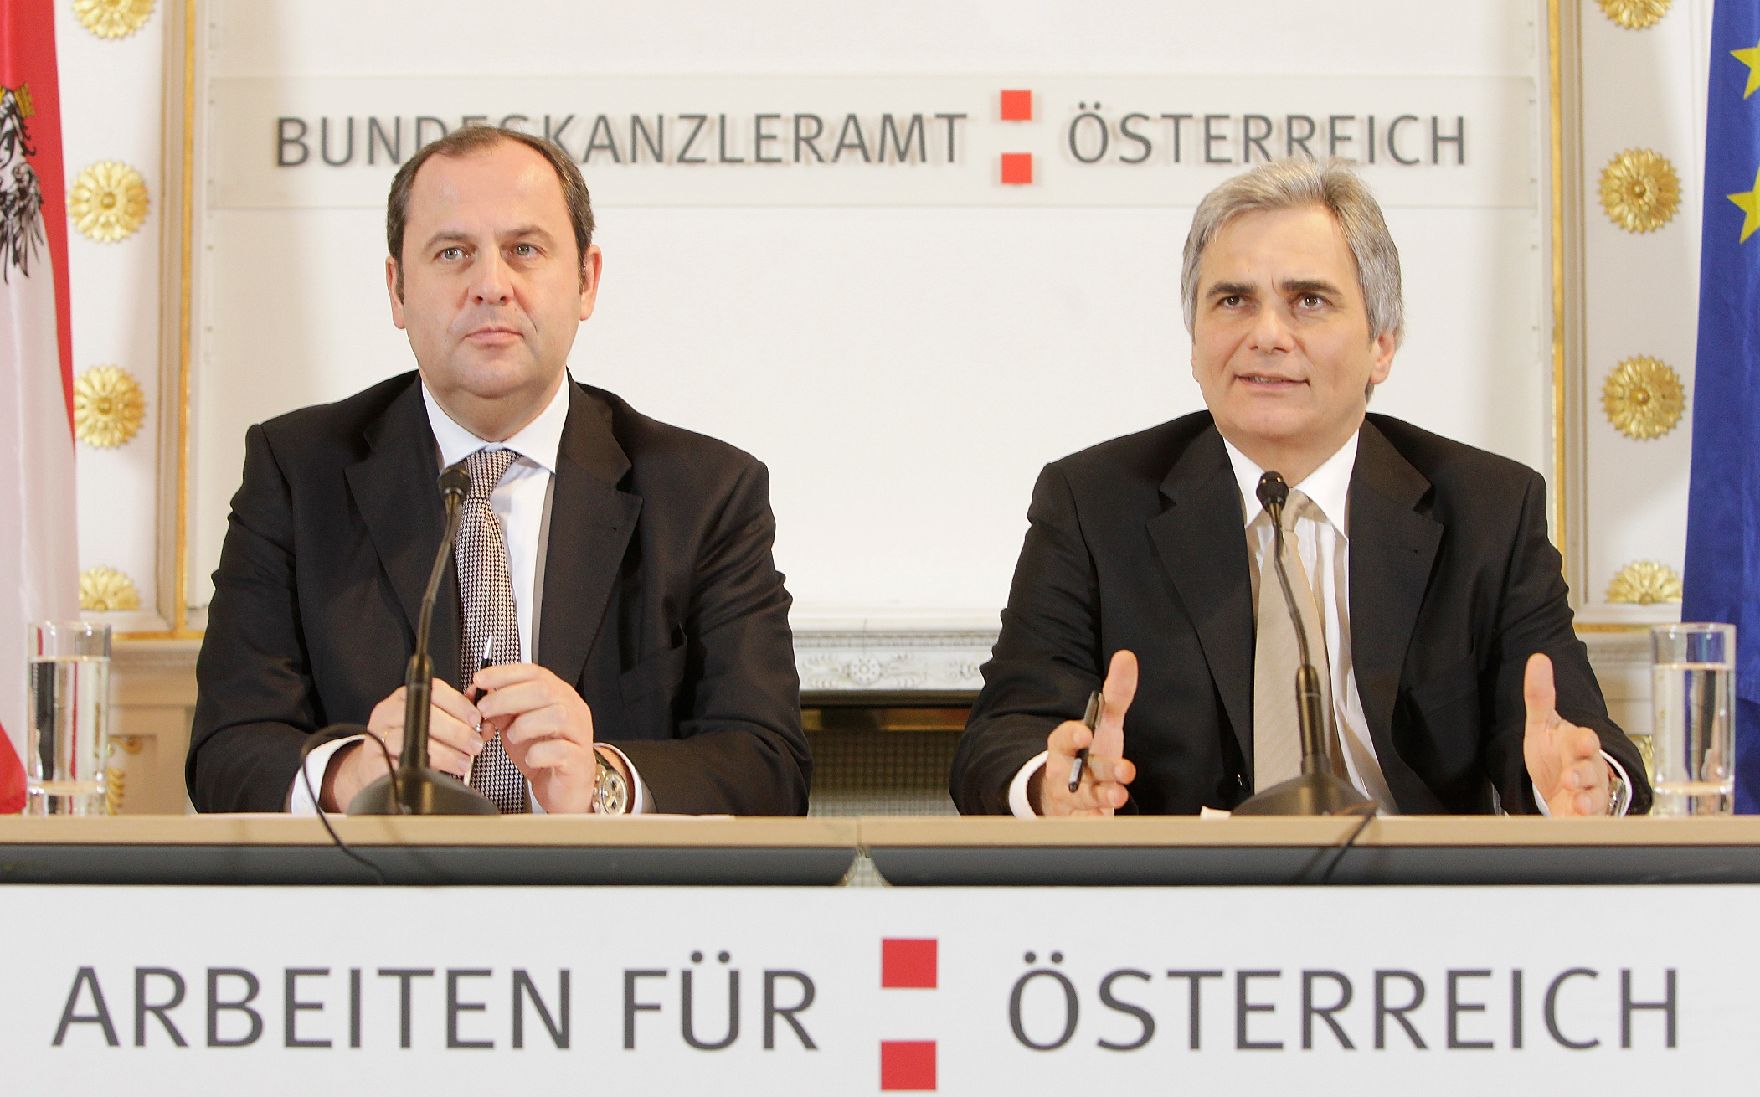 Bundeskanzler Werner Faymann (r.) und Finanzminister Josef Pröll (l.) beim Pressefoyer nach dem Ministerrat am 14. Dezember 2010 im Bundeskanzleramt.